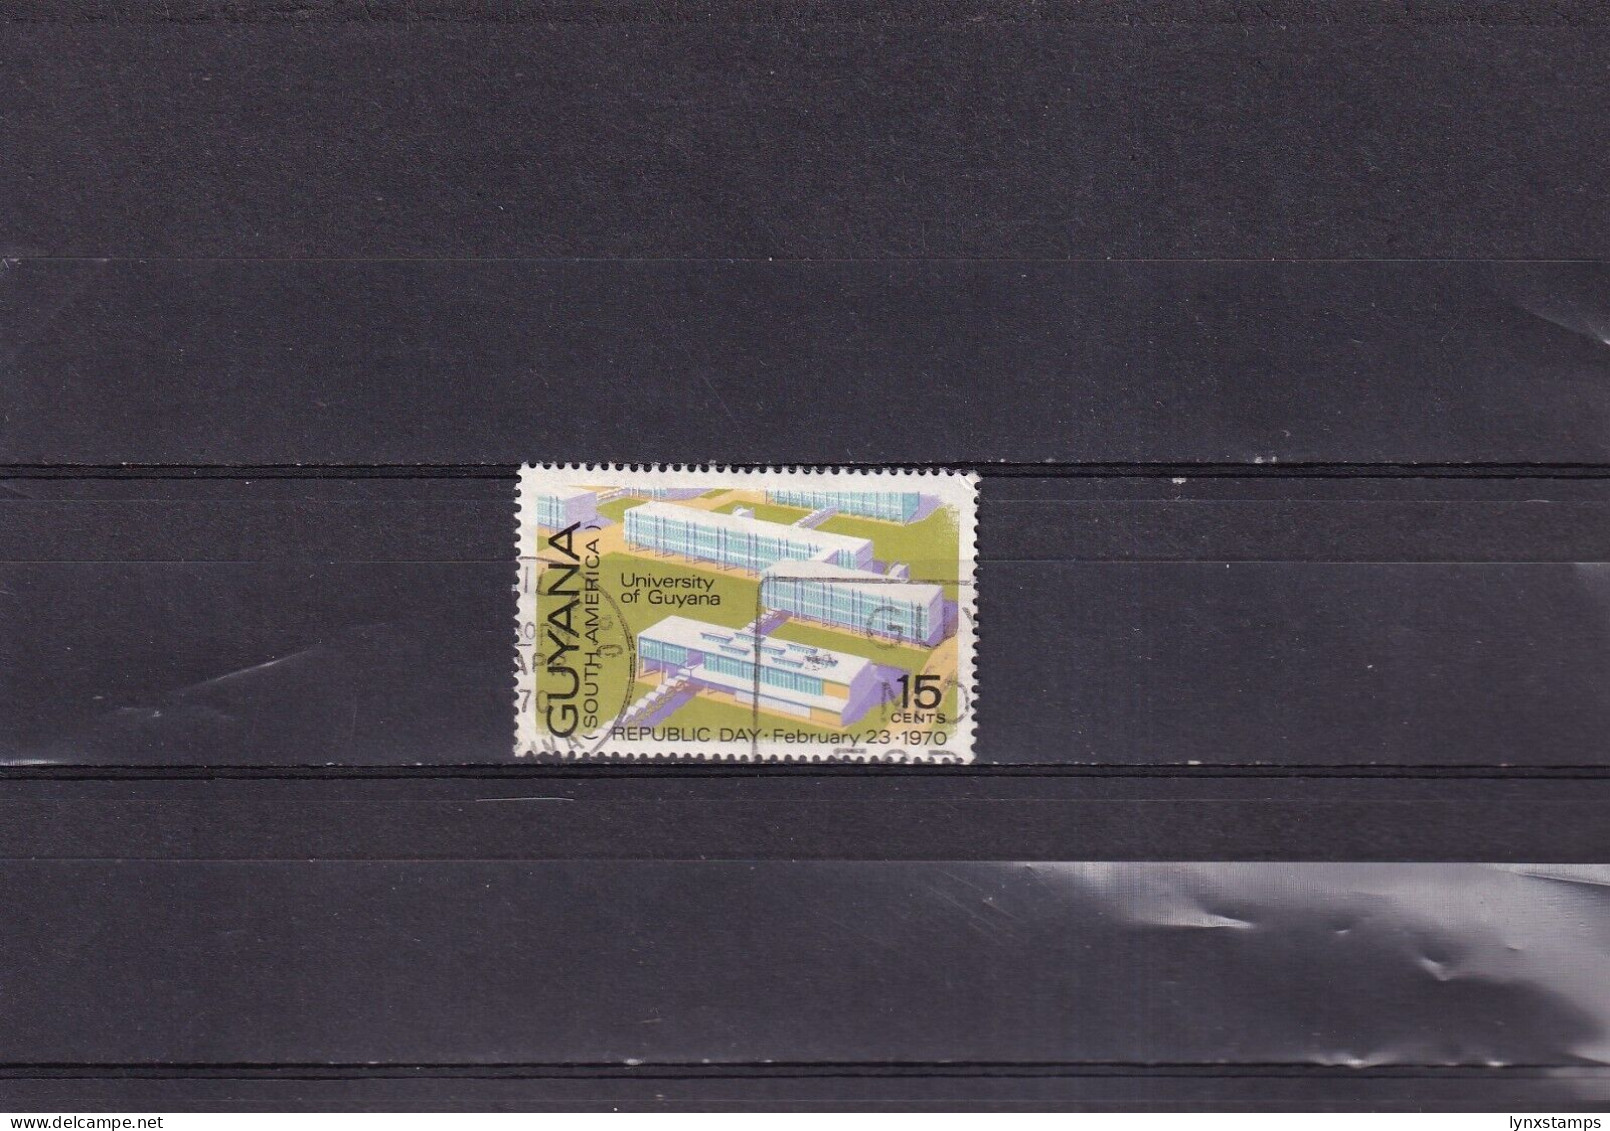 ER03 Guyana 1970 University Of Guyana Used Stamp - Guyana (1966-...)